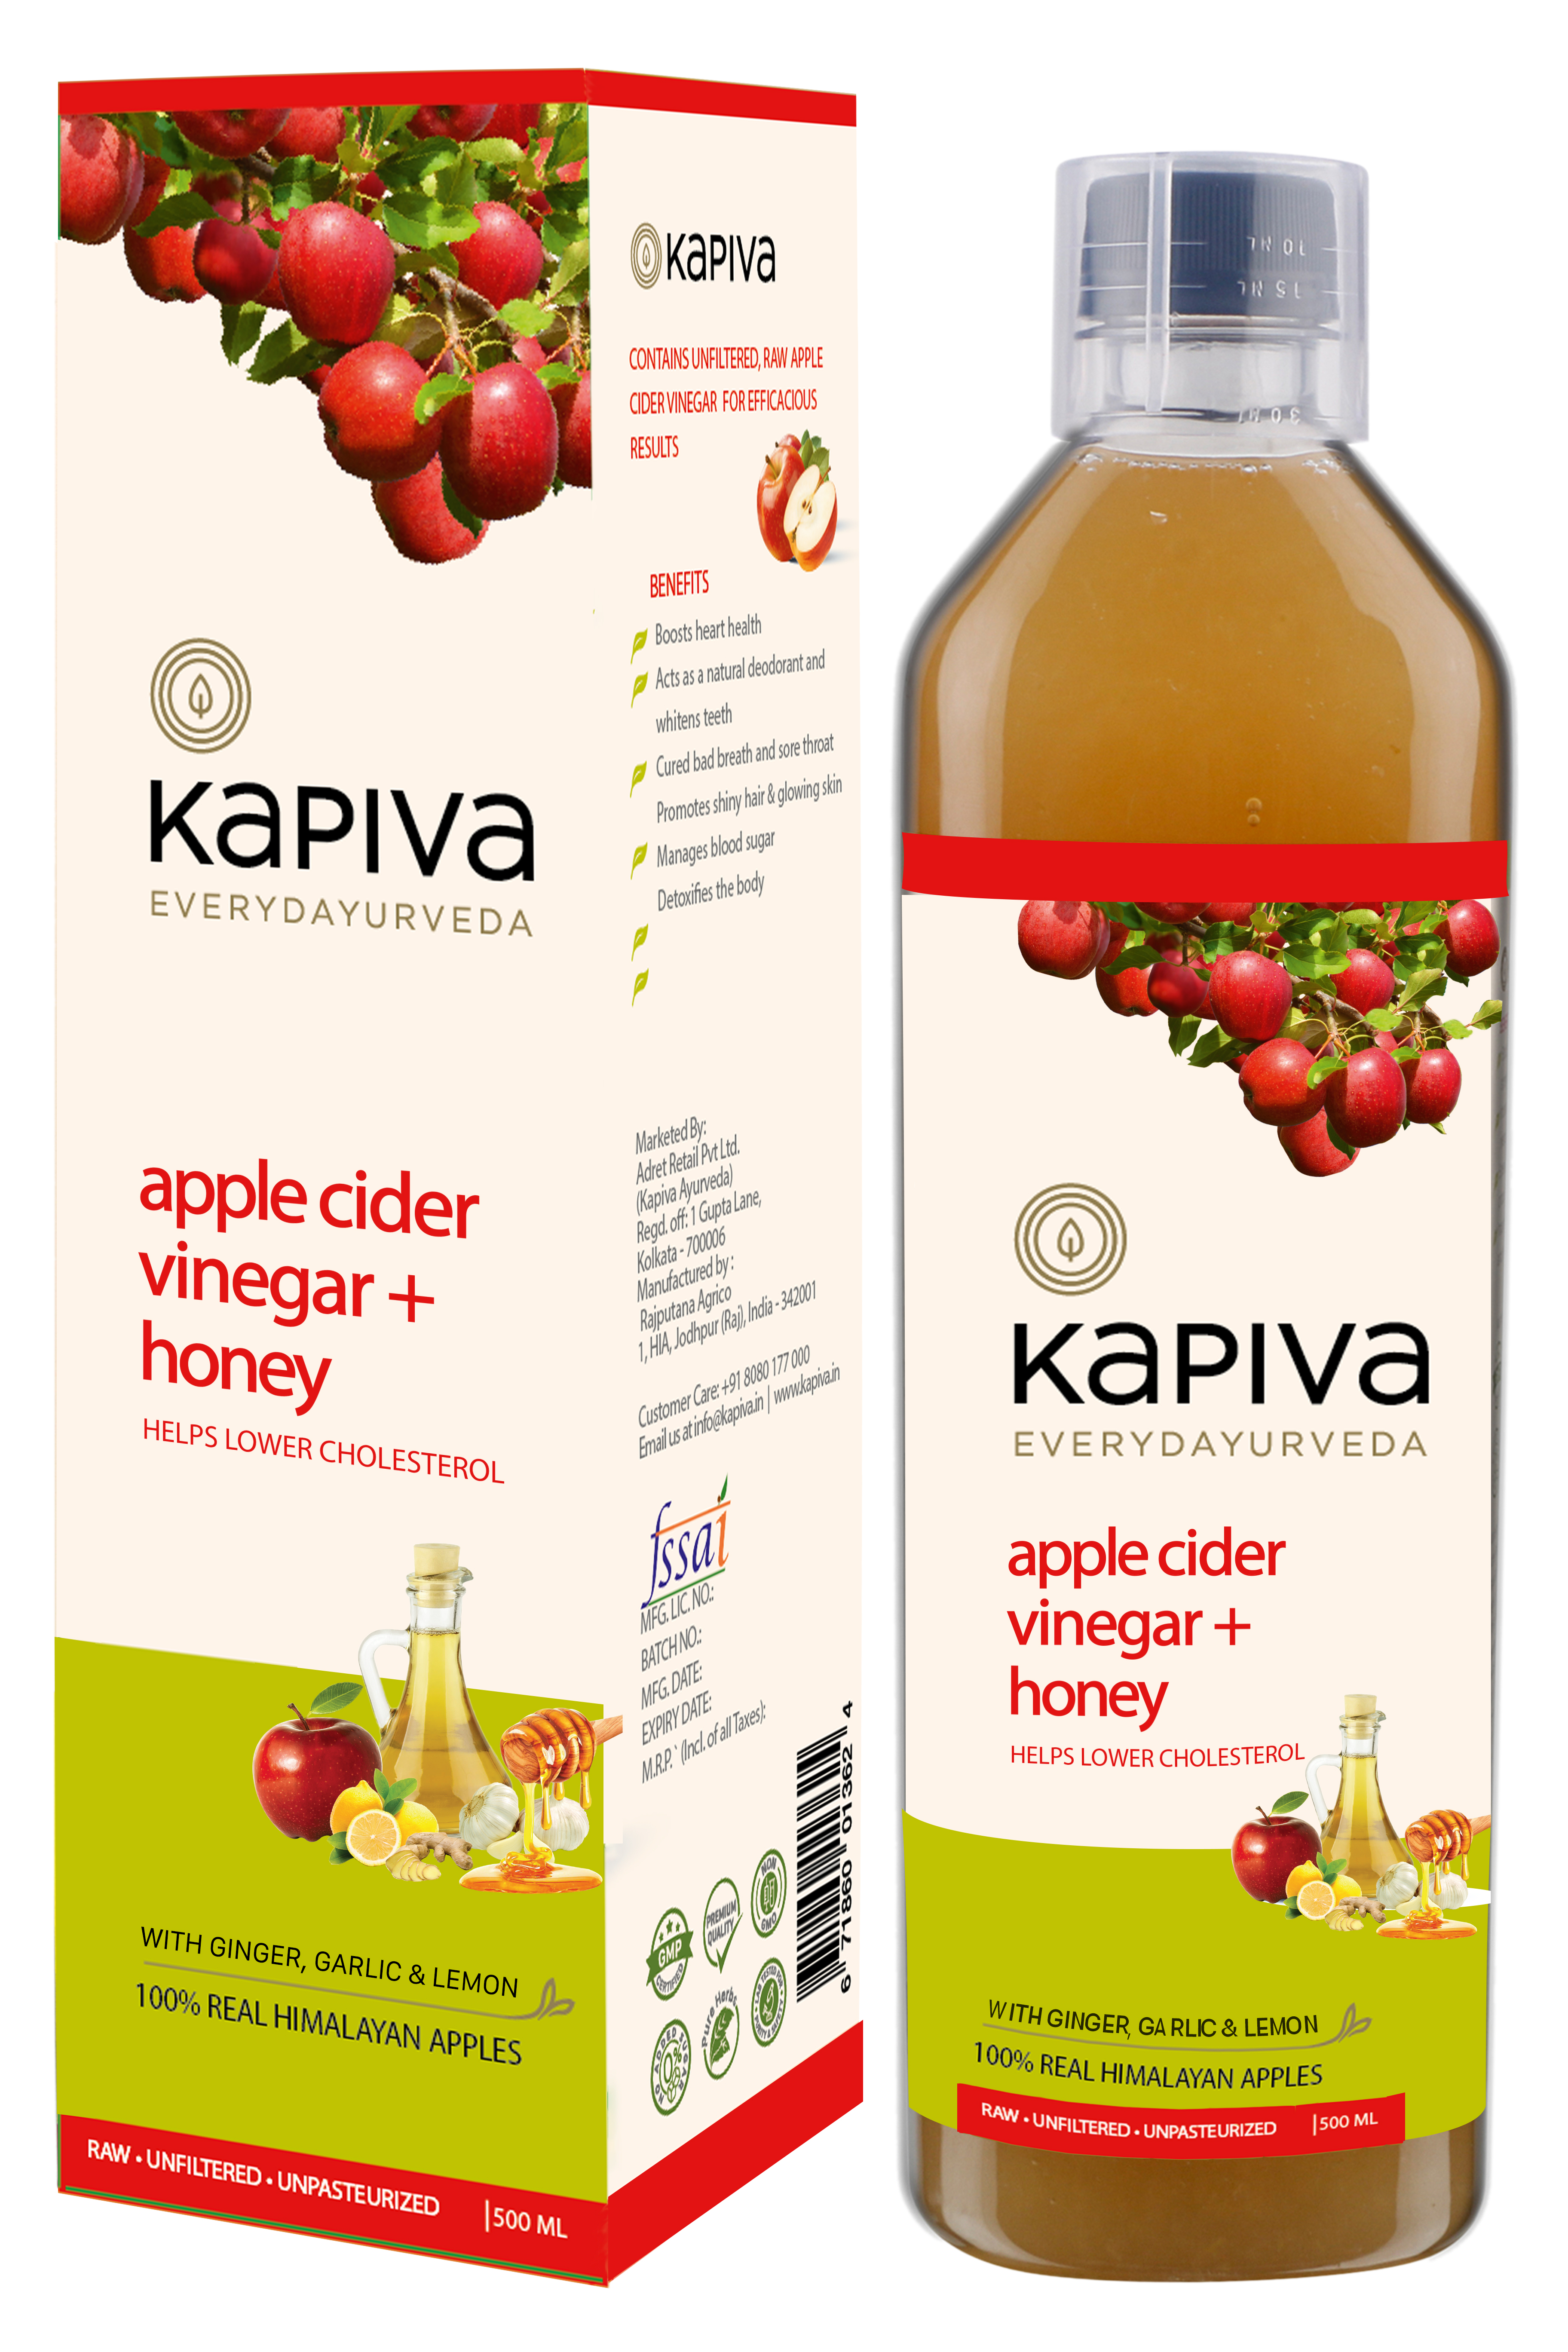 Buy Kapiva Apple Cider Vinegar + Honey at Best Price Online